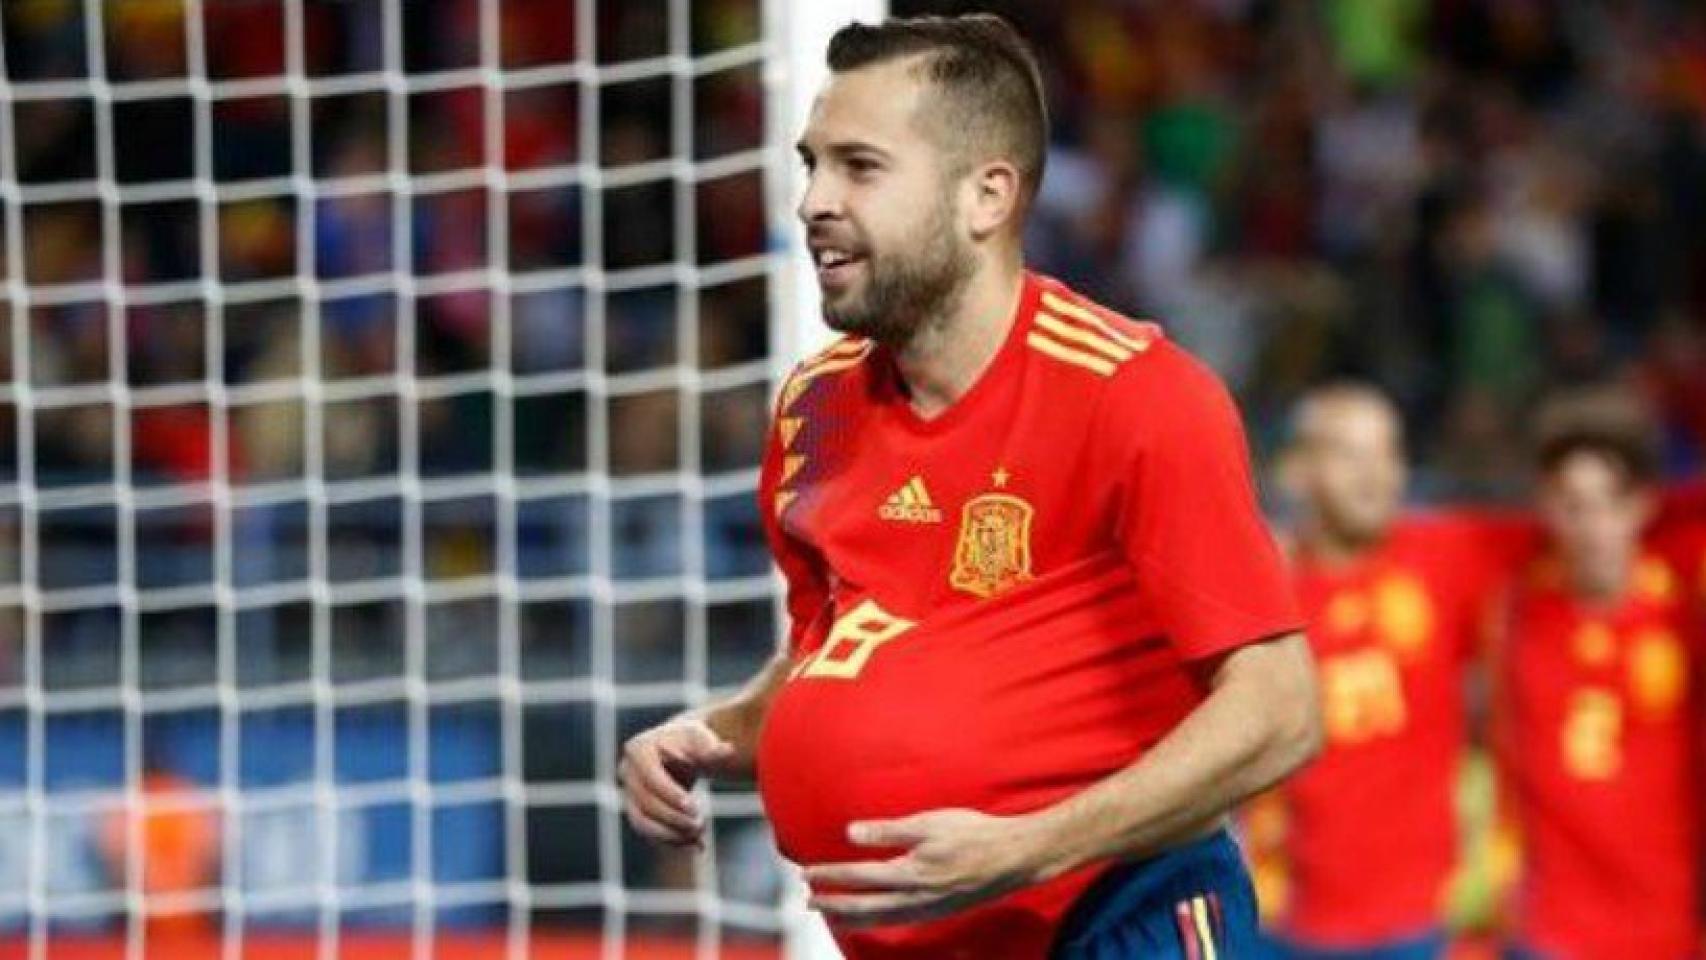 Jordi Alba celebra un gol con España. Foto sefutbol.com